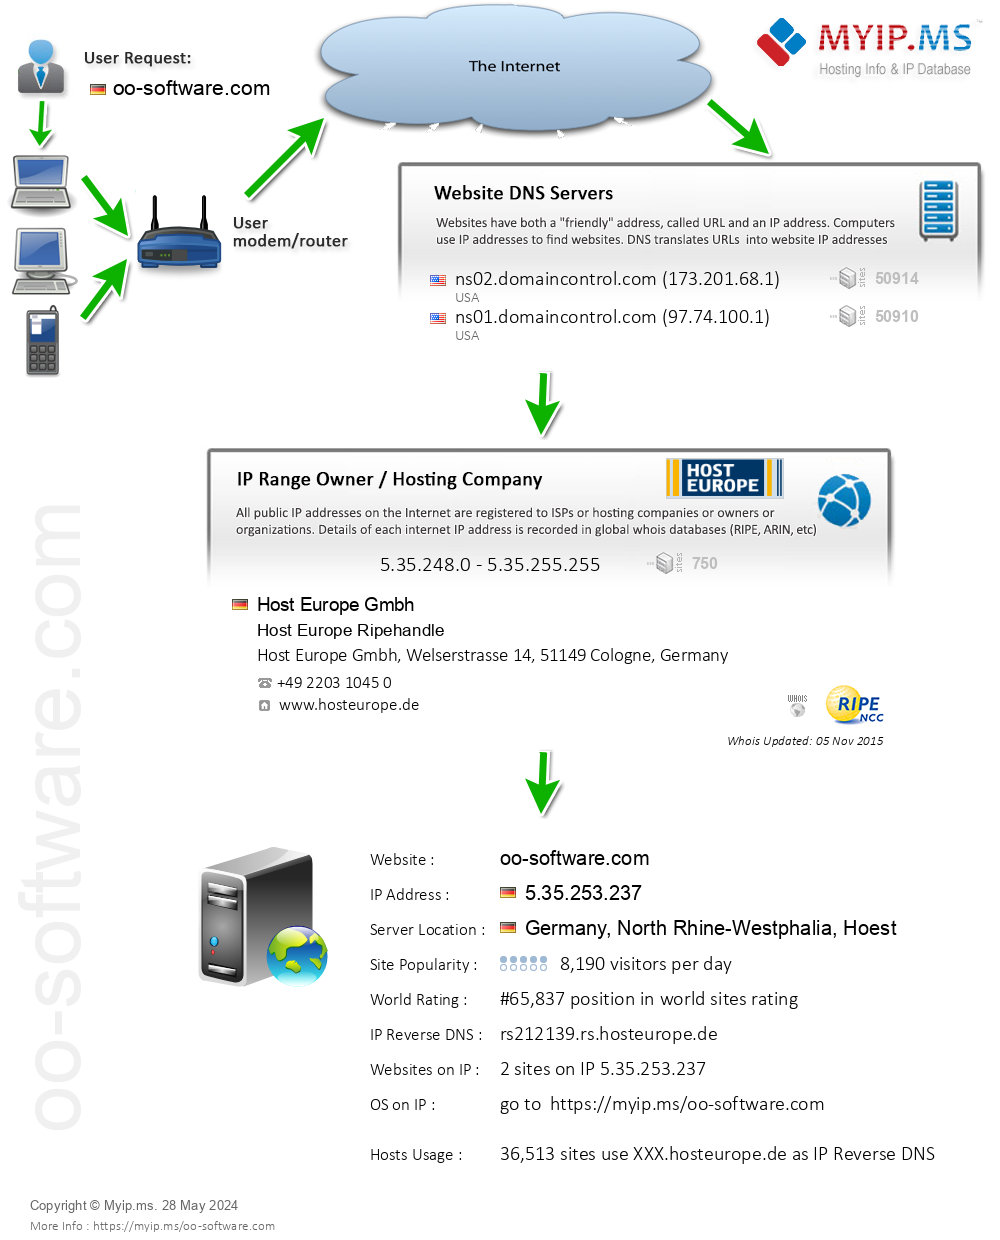 Oo-software.com - Website Hosting Visual IP Diagram